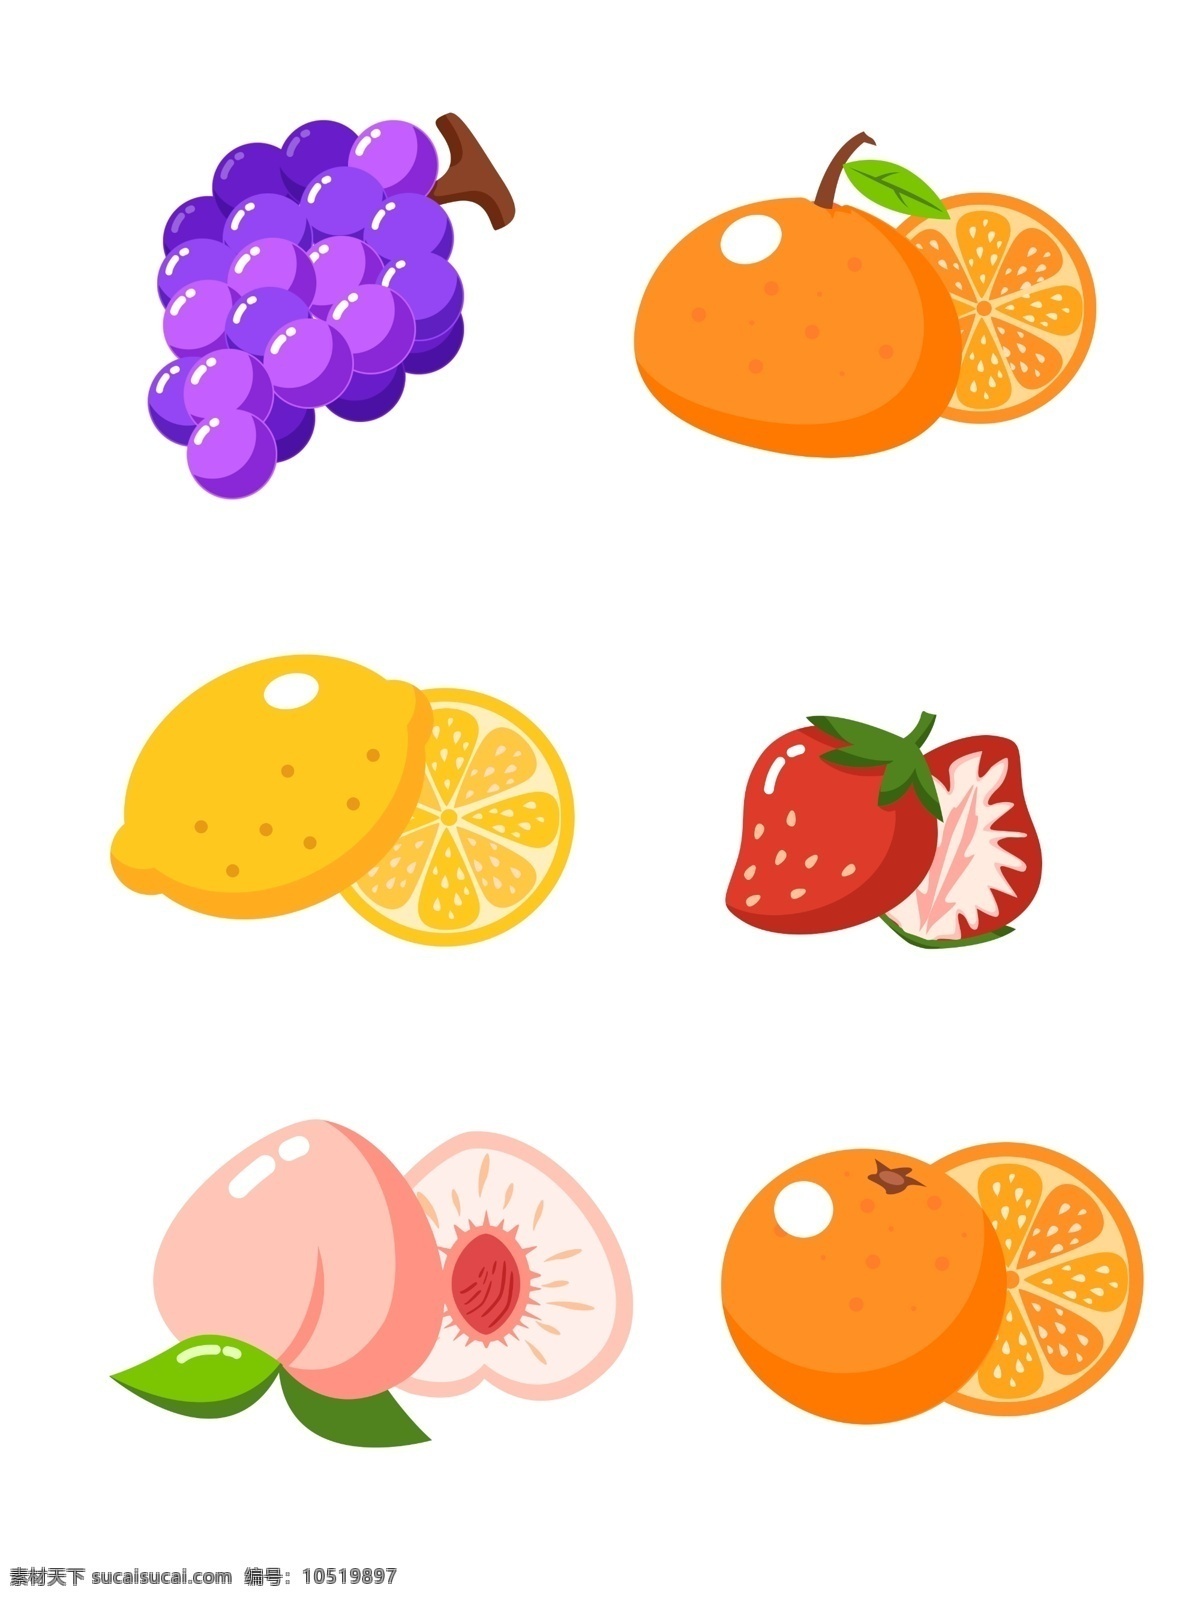 矢量 手绘 水果 切片 合集 葡萄 橙子 柠檬 草莓 卡通 水果切片 橘子 桃子 可商用